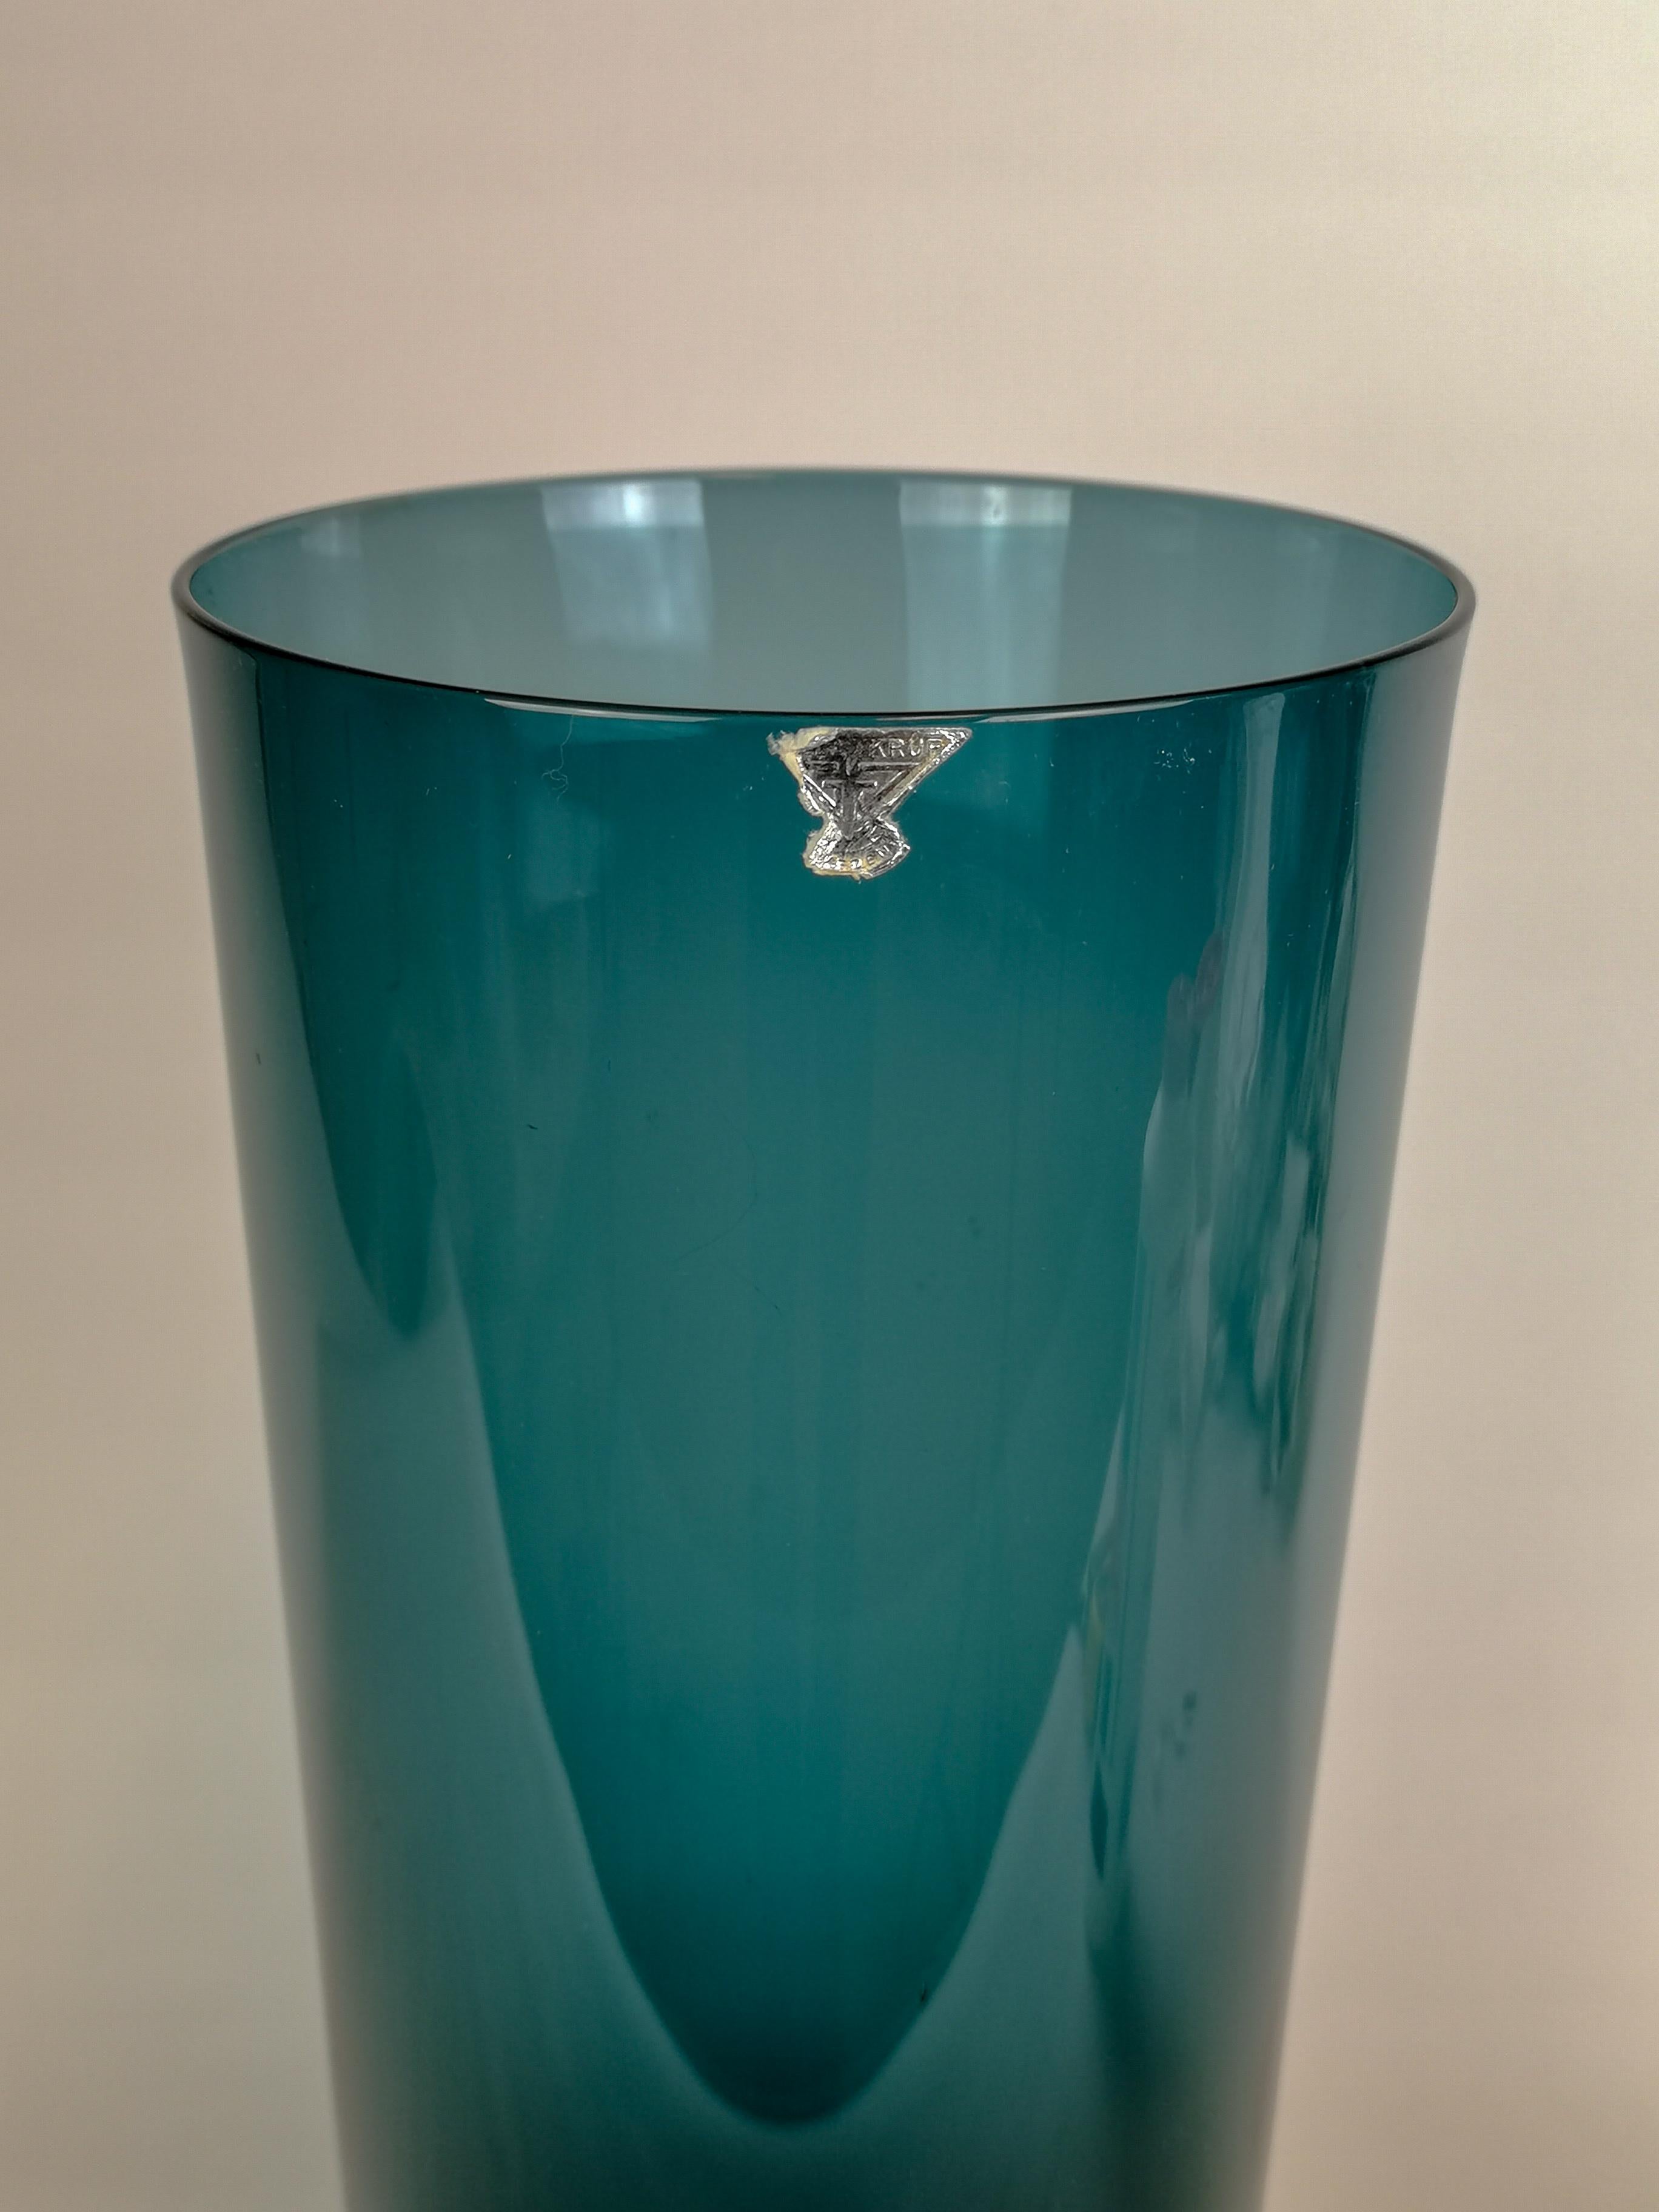 Ce magnifique grand vase fabriqué en Suède à GullaSkruf a été conçu par Kjell Blomberg dans les années 1950.
Il a une belle couleur et comme beaucoup de designers suédois, le luminaire a une partie centrale pour donner à la pièce en verre ce petit